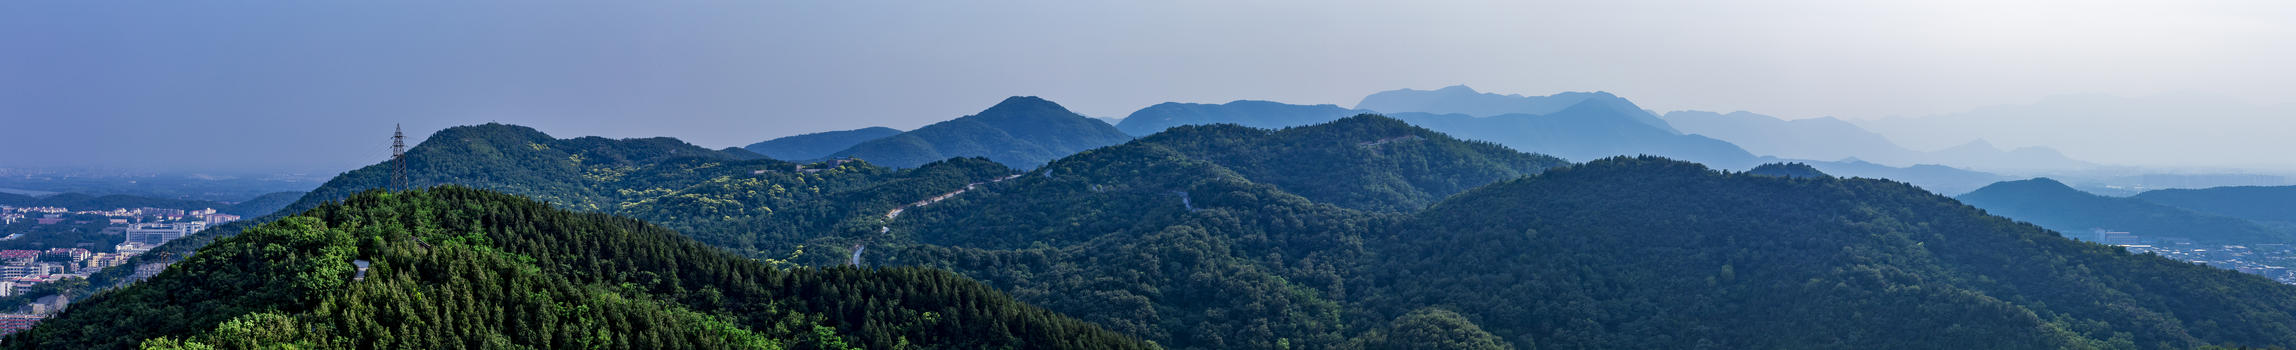 百望山的美景图片素材免费下载